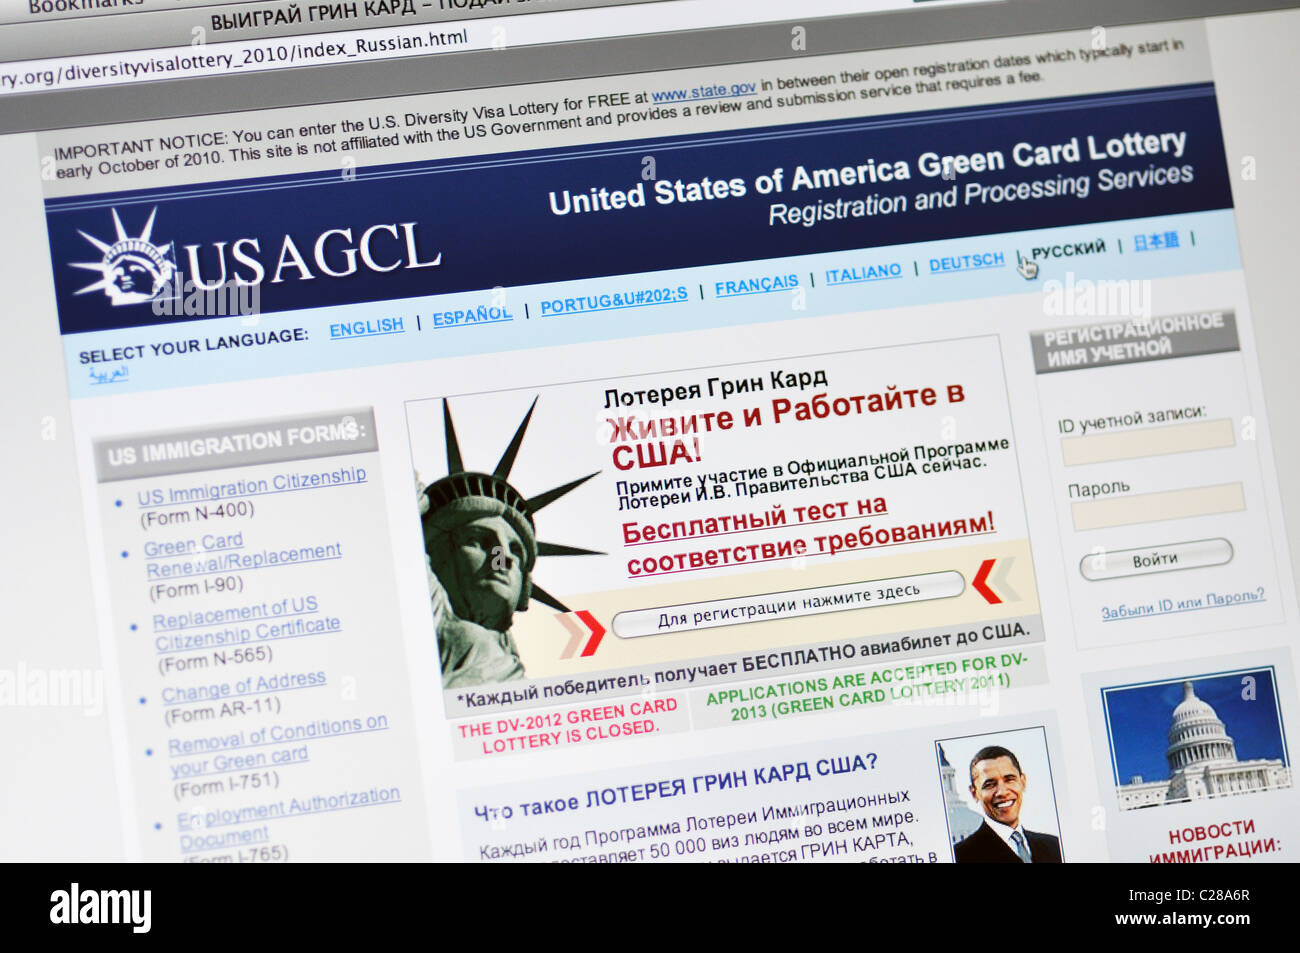 USAGCL Website - Vereinigte Staaten von Amerika Greencard Lotterie - in russischer Sprache Stockfoto